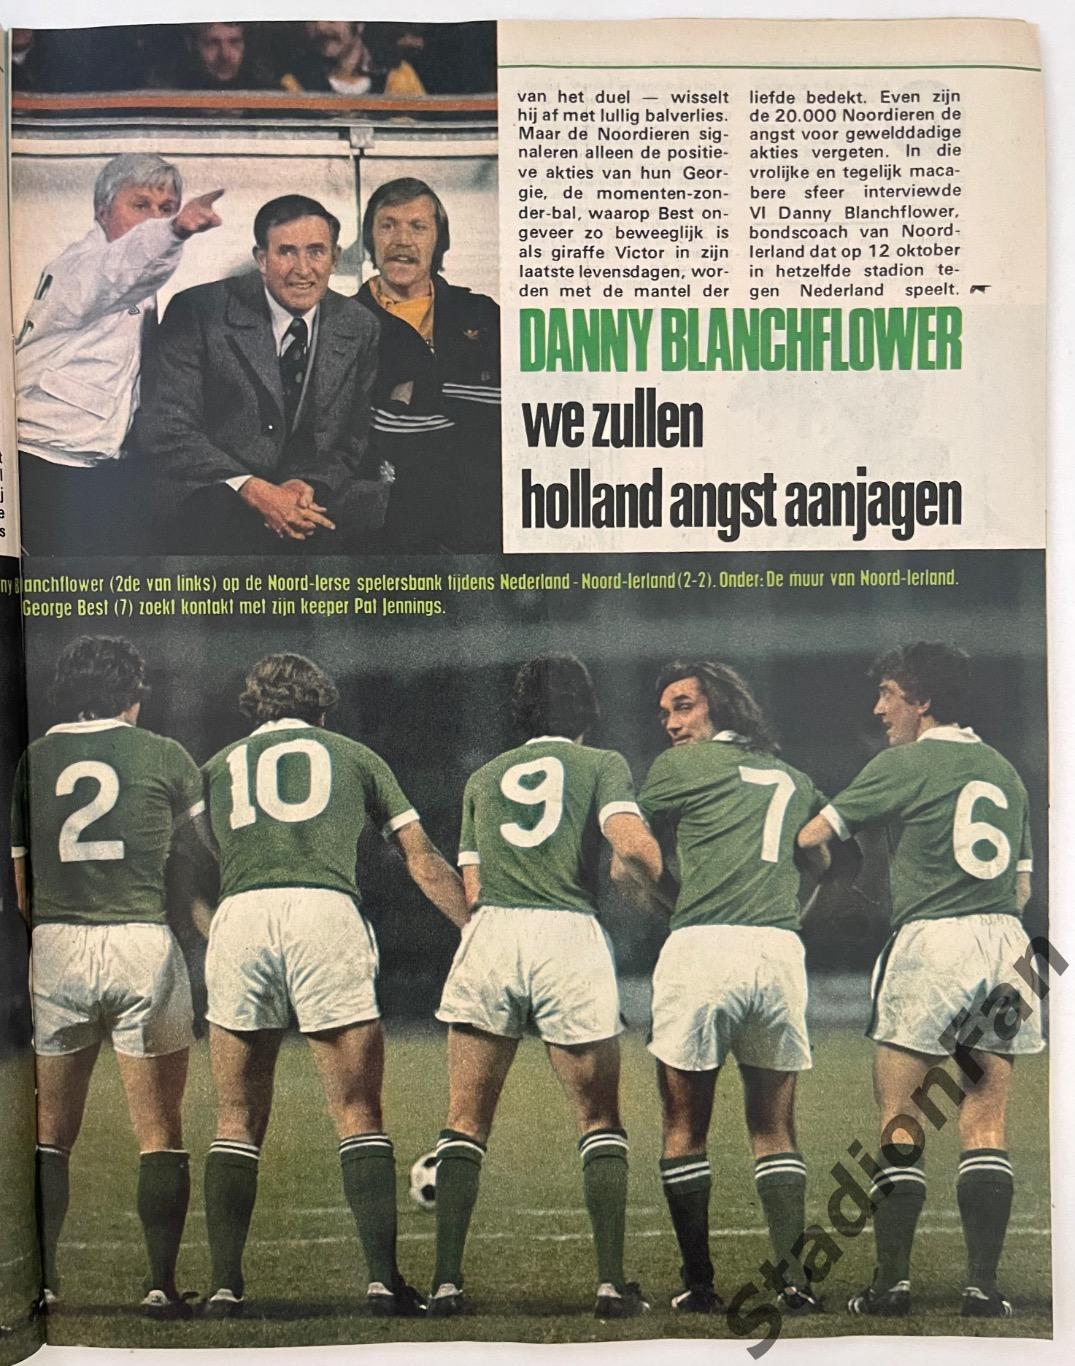 Журнал Voetbal nr.40 - 1977 год. 1